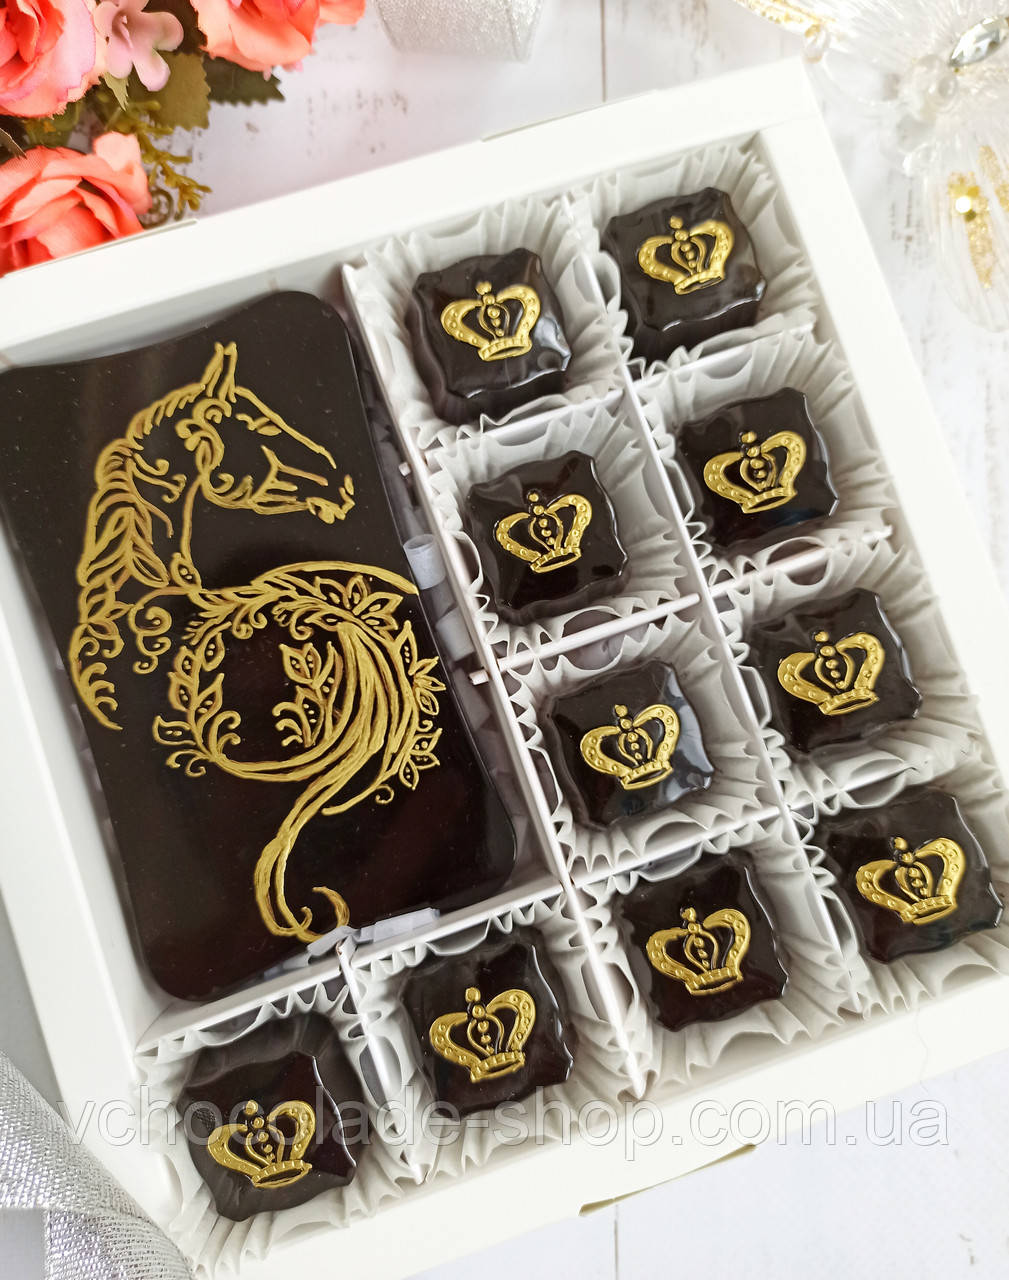 Елітні шоколадні цукерки Ручний розпис Французька хрустка начинка фундук на темному шоколаді